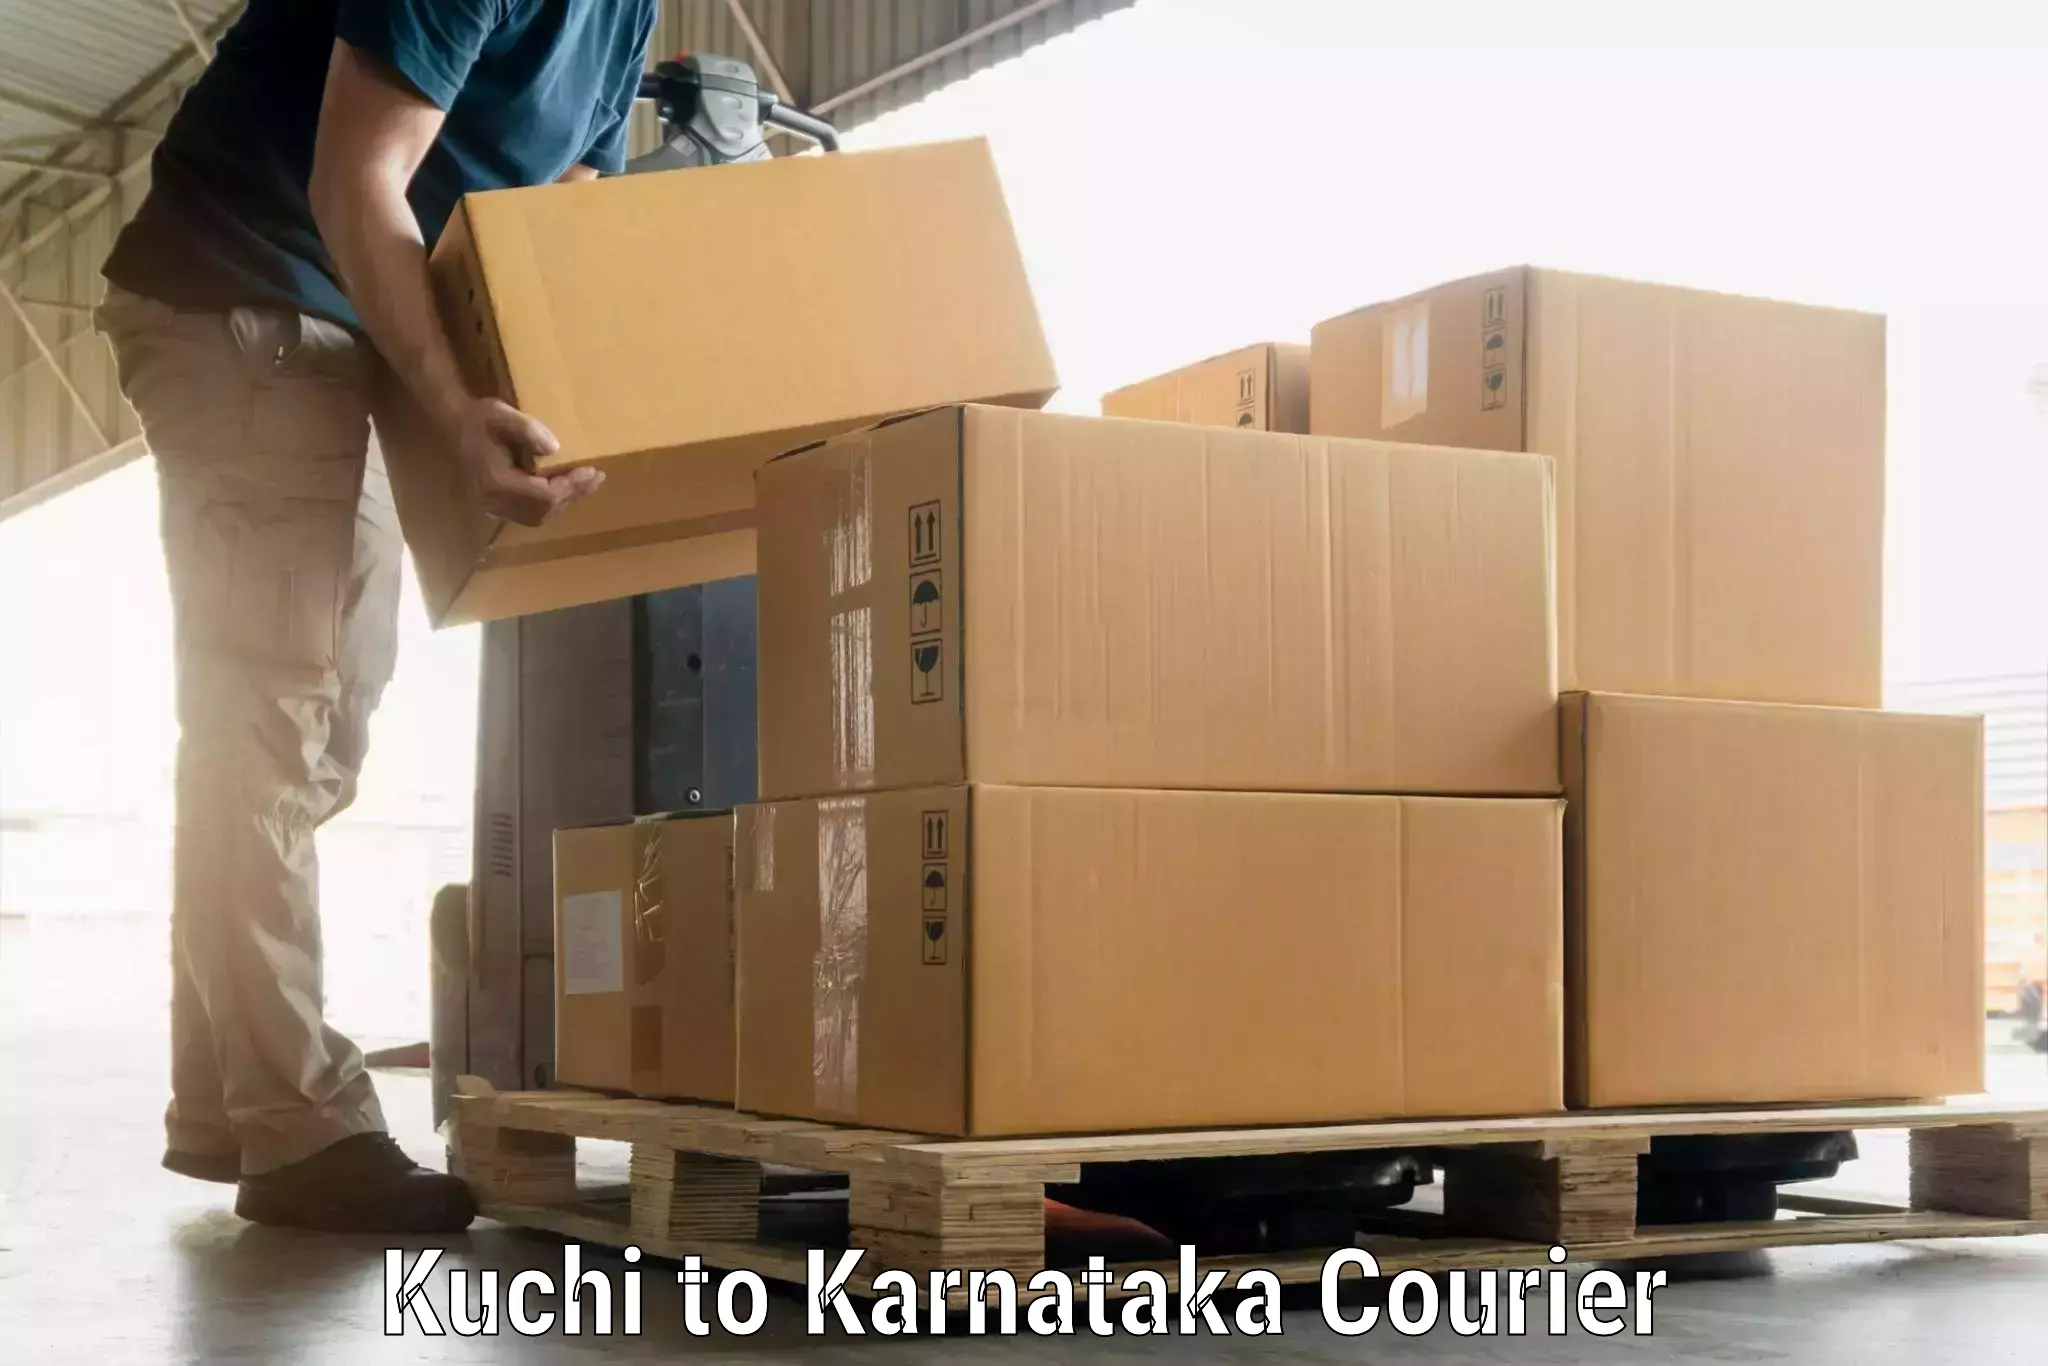 Luggage delivery system Kuchi to Karnataka